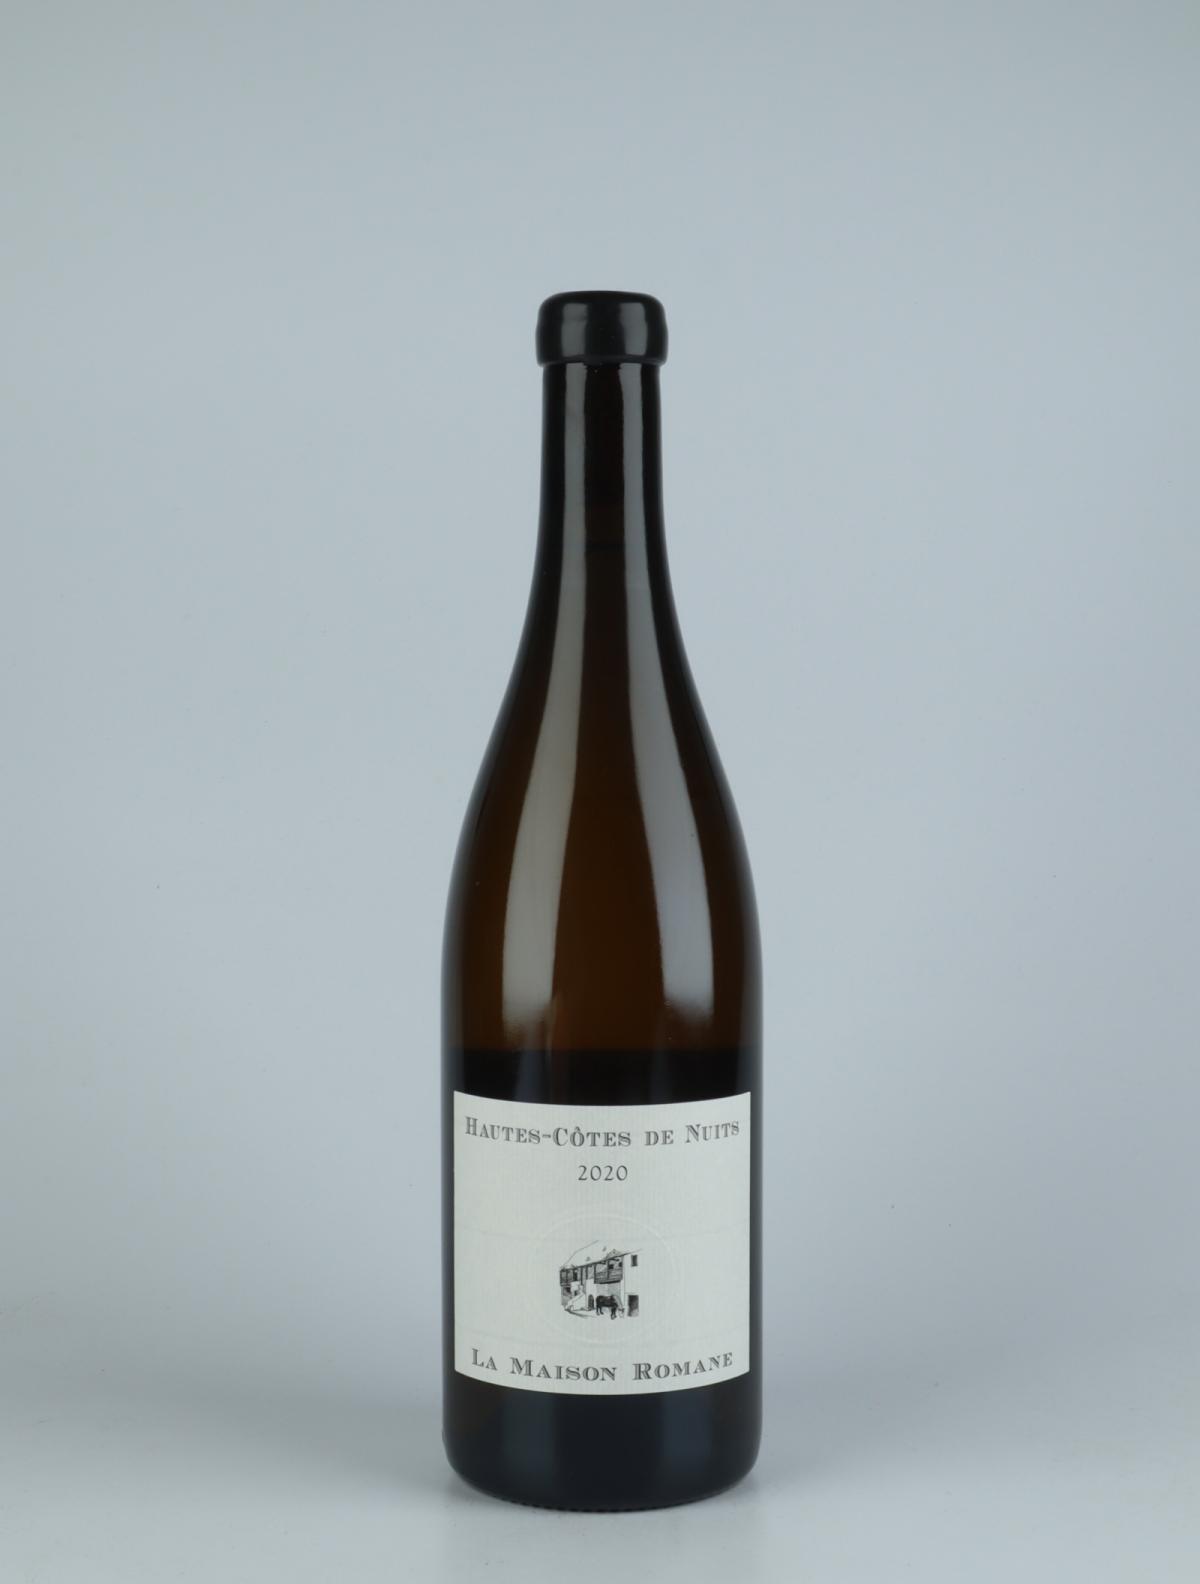 A bottle 2020 Hautes Côtes de Nuits Blanc White wine from La Maison Romane, Burgundy in France